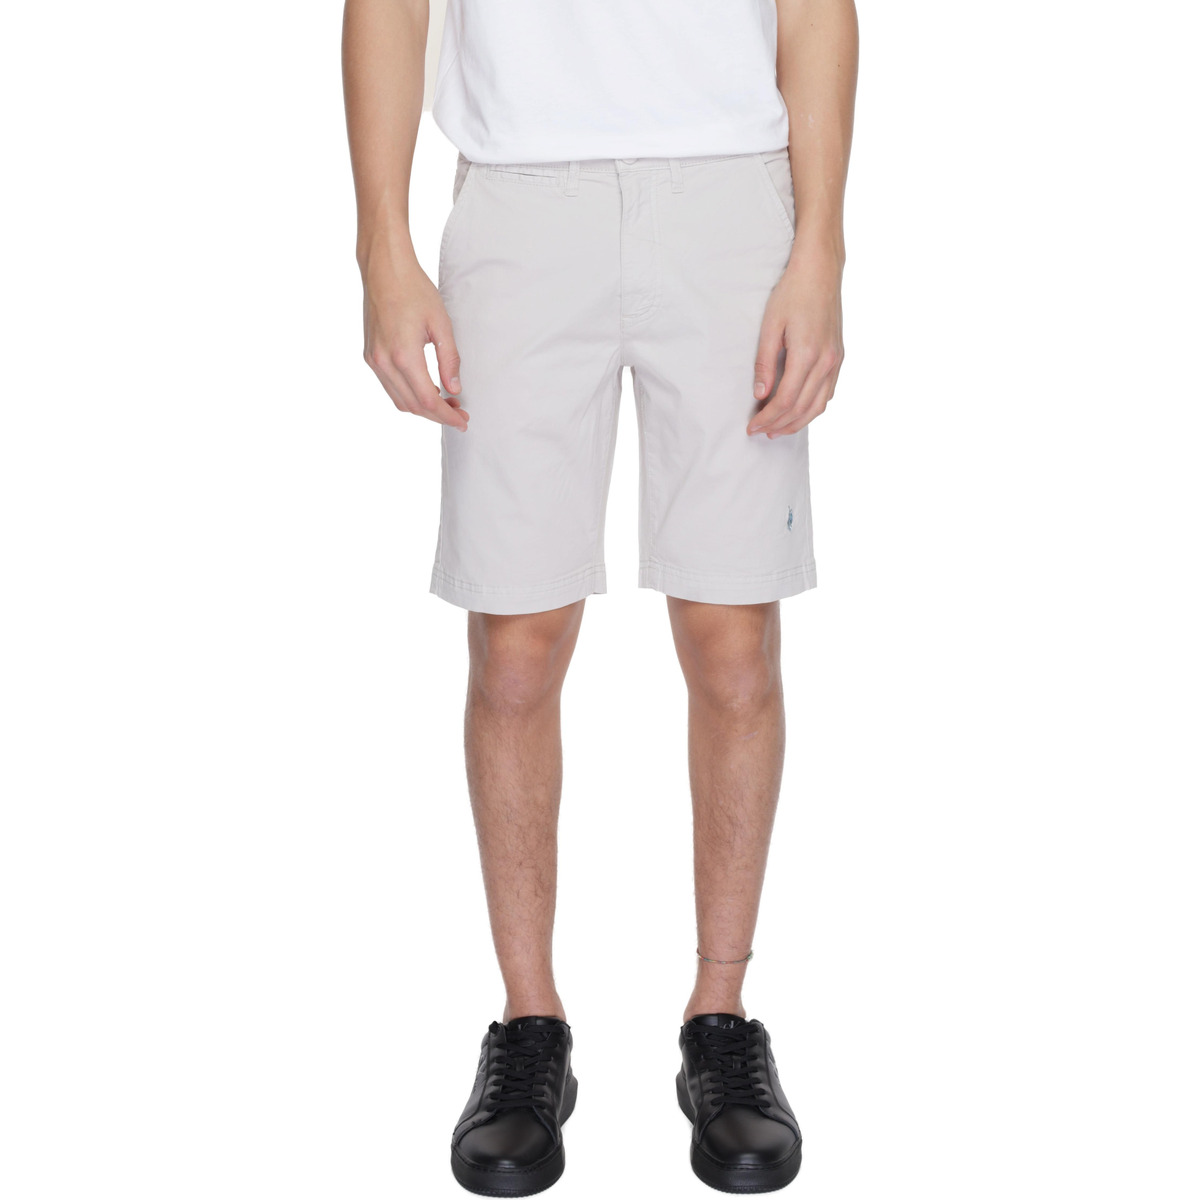 Vêtements Homme Shorts / Bermudas U.S Polo Assn. ABEL 67610 49492 Gris